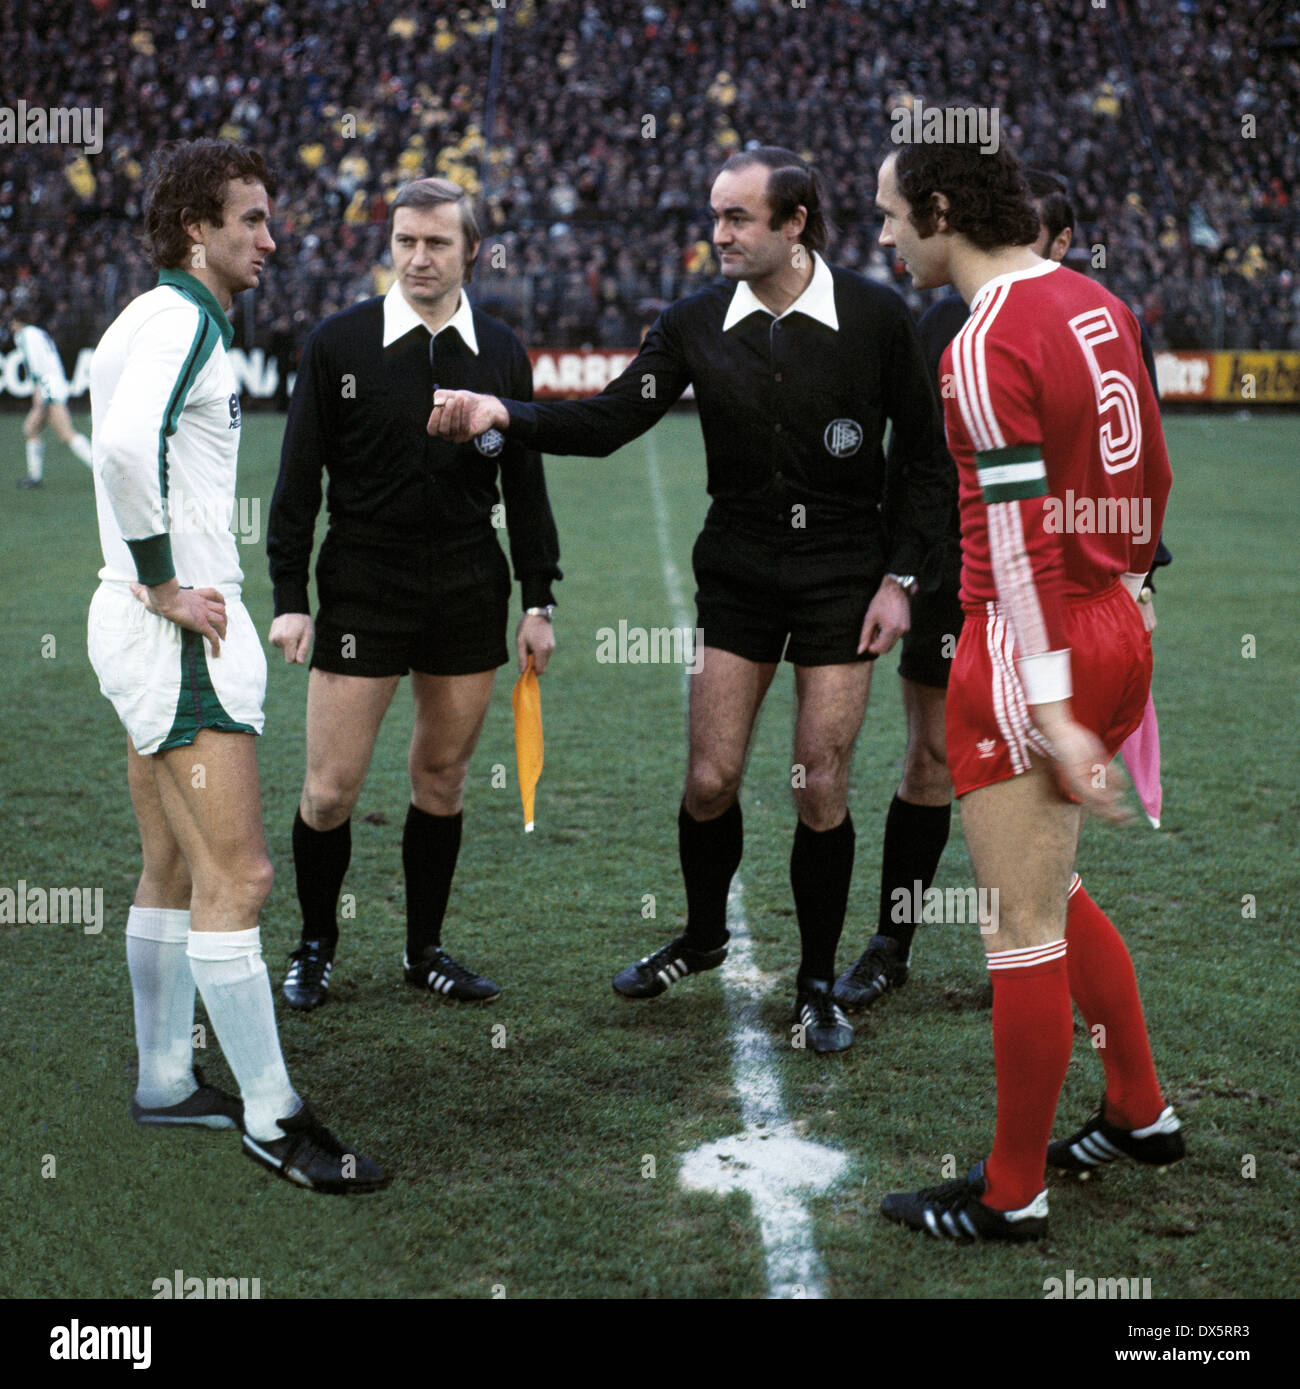 Football, Bundesliga, 1976/1977, le stade am Boekelberg, Borussia Moenchengladbach contre FC Bayern Munich 1:0, bienvenue, les chefs d'équipe Rainer Bonhof (MG) à gauche et Franz Beckenbauer (FCB), derrière Volker Roth et assistants de l'arbitre Banque D'Images